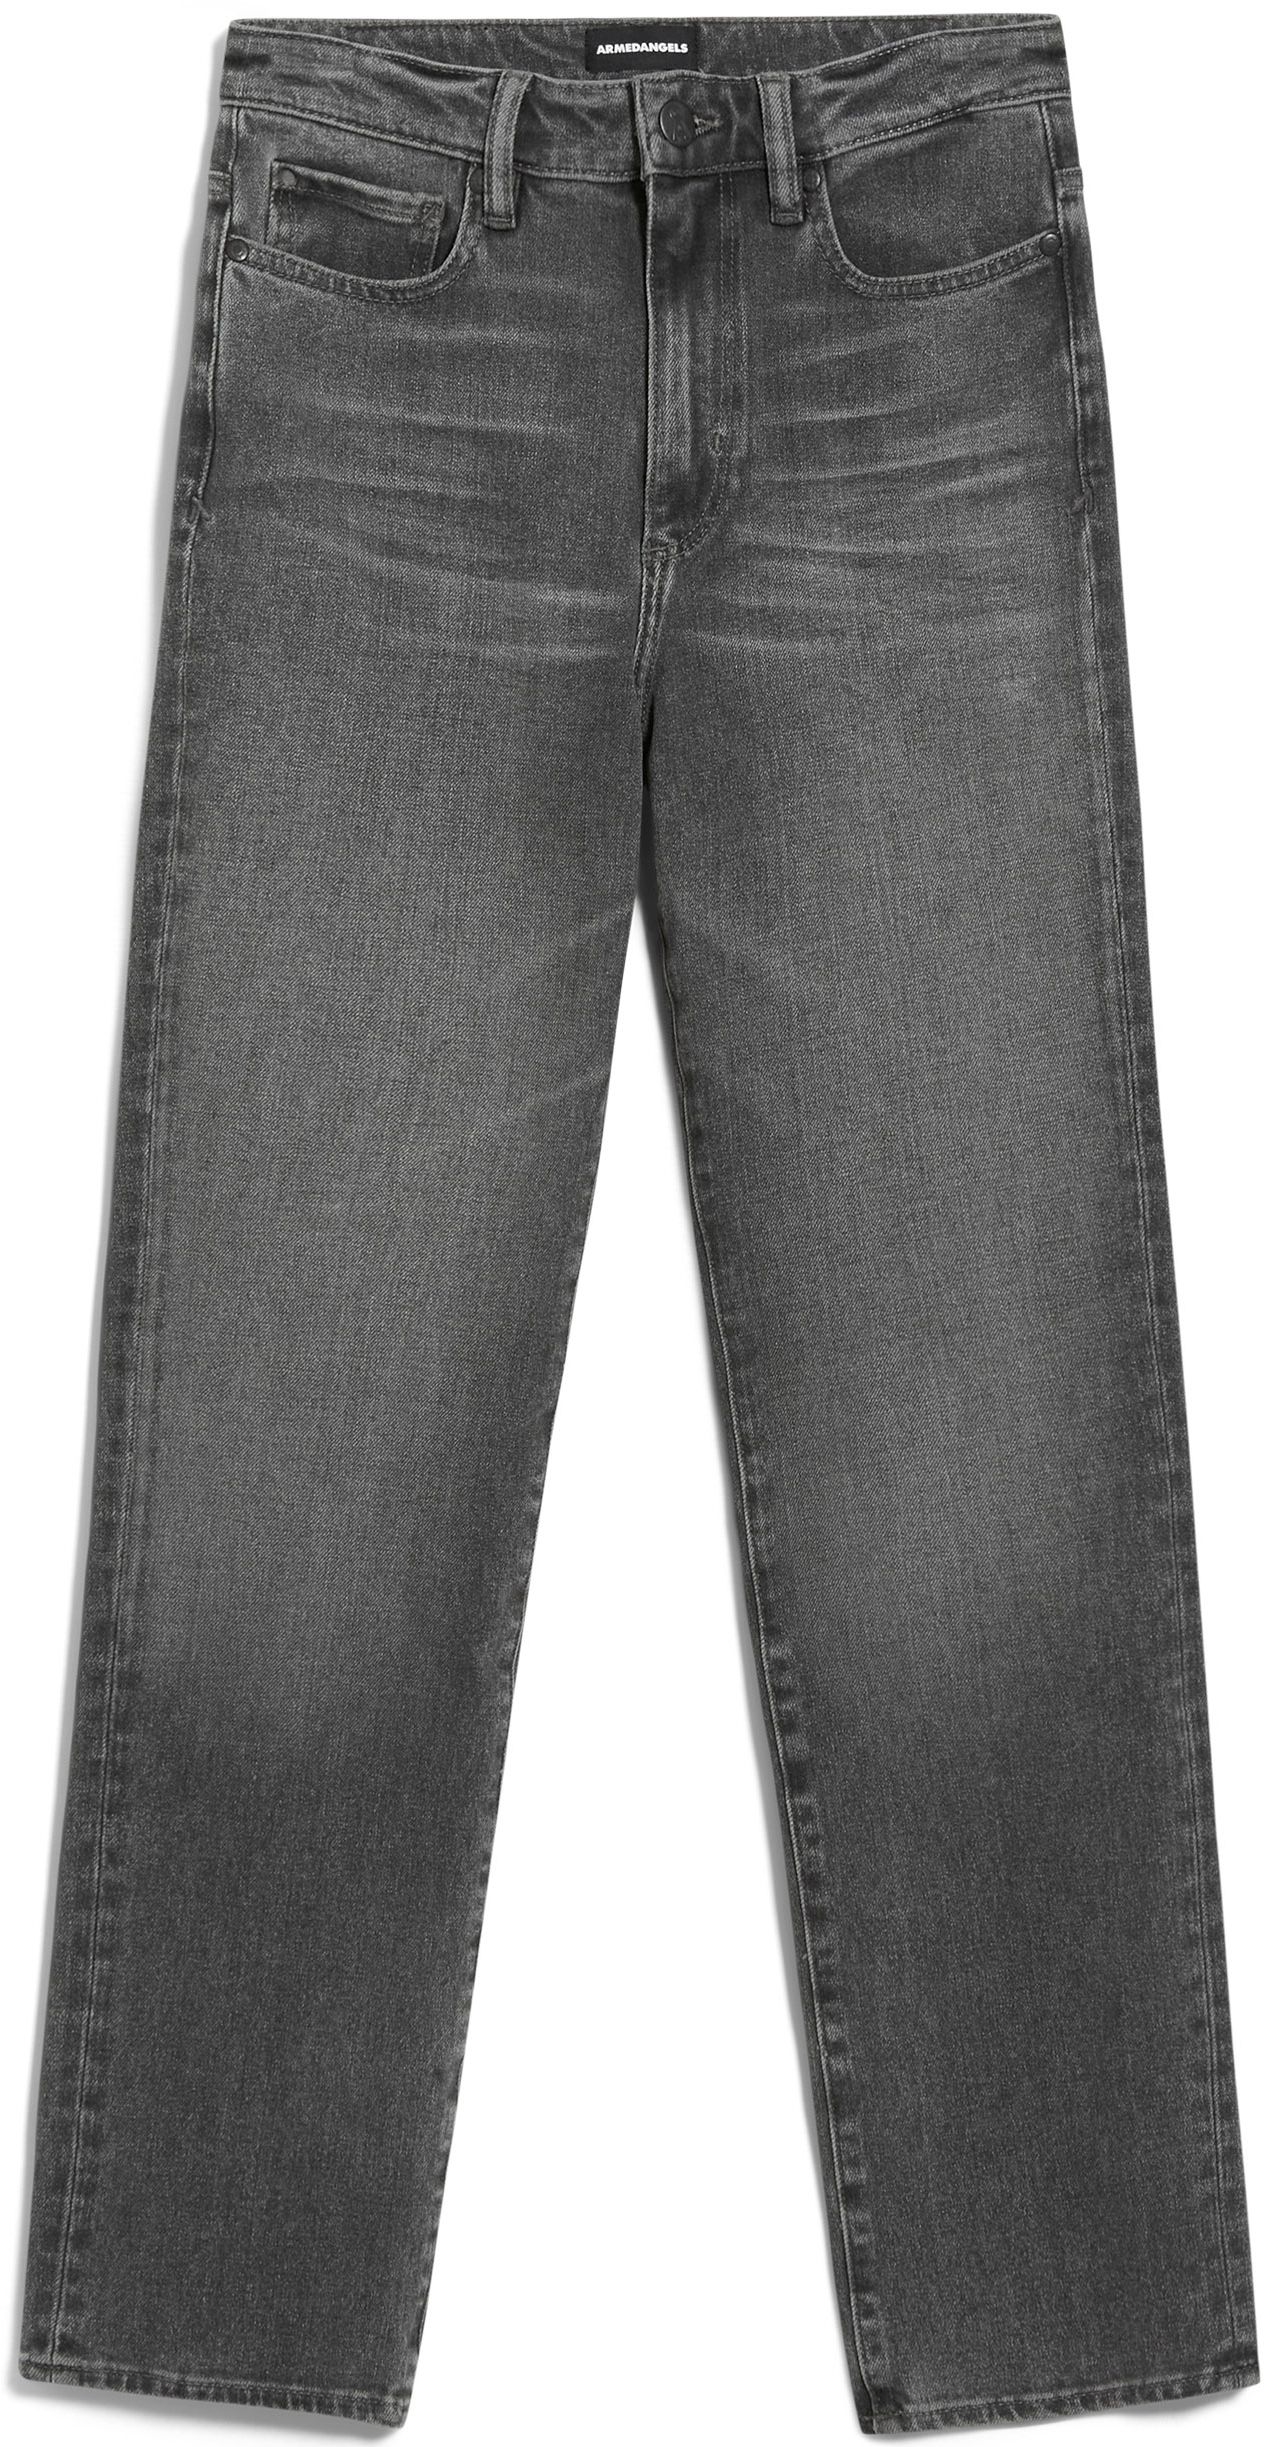 Slim Fit High Waist Jeans LEJAANI worn stone grey